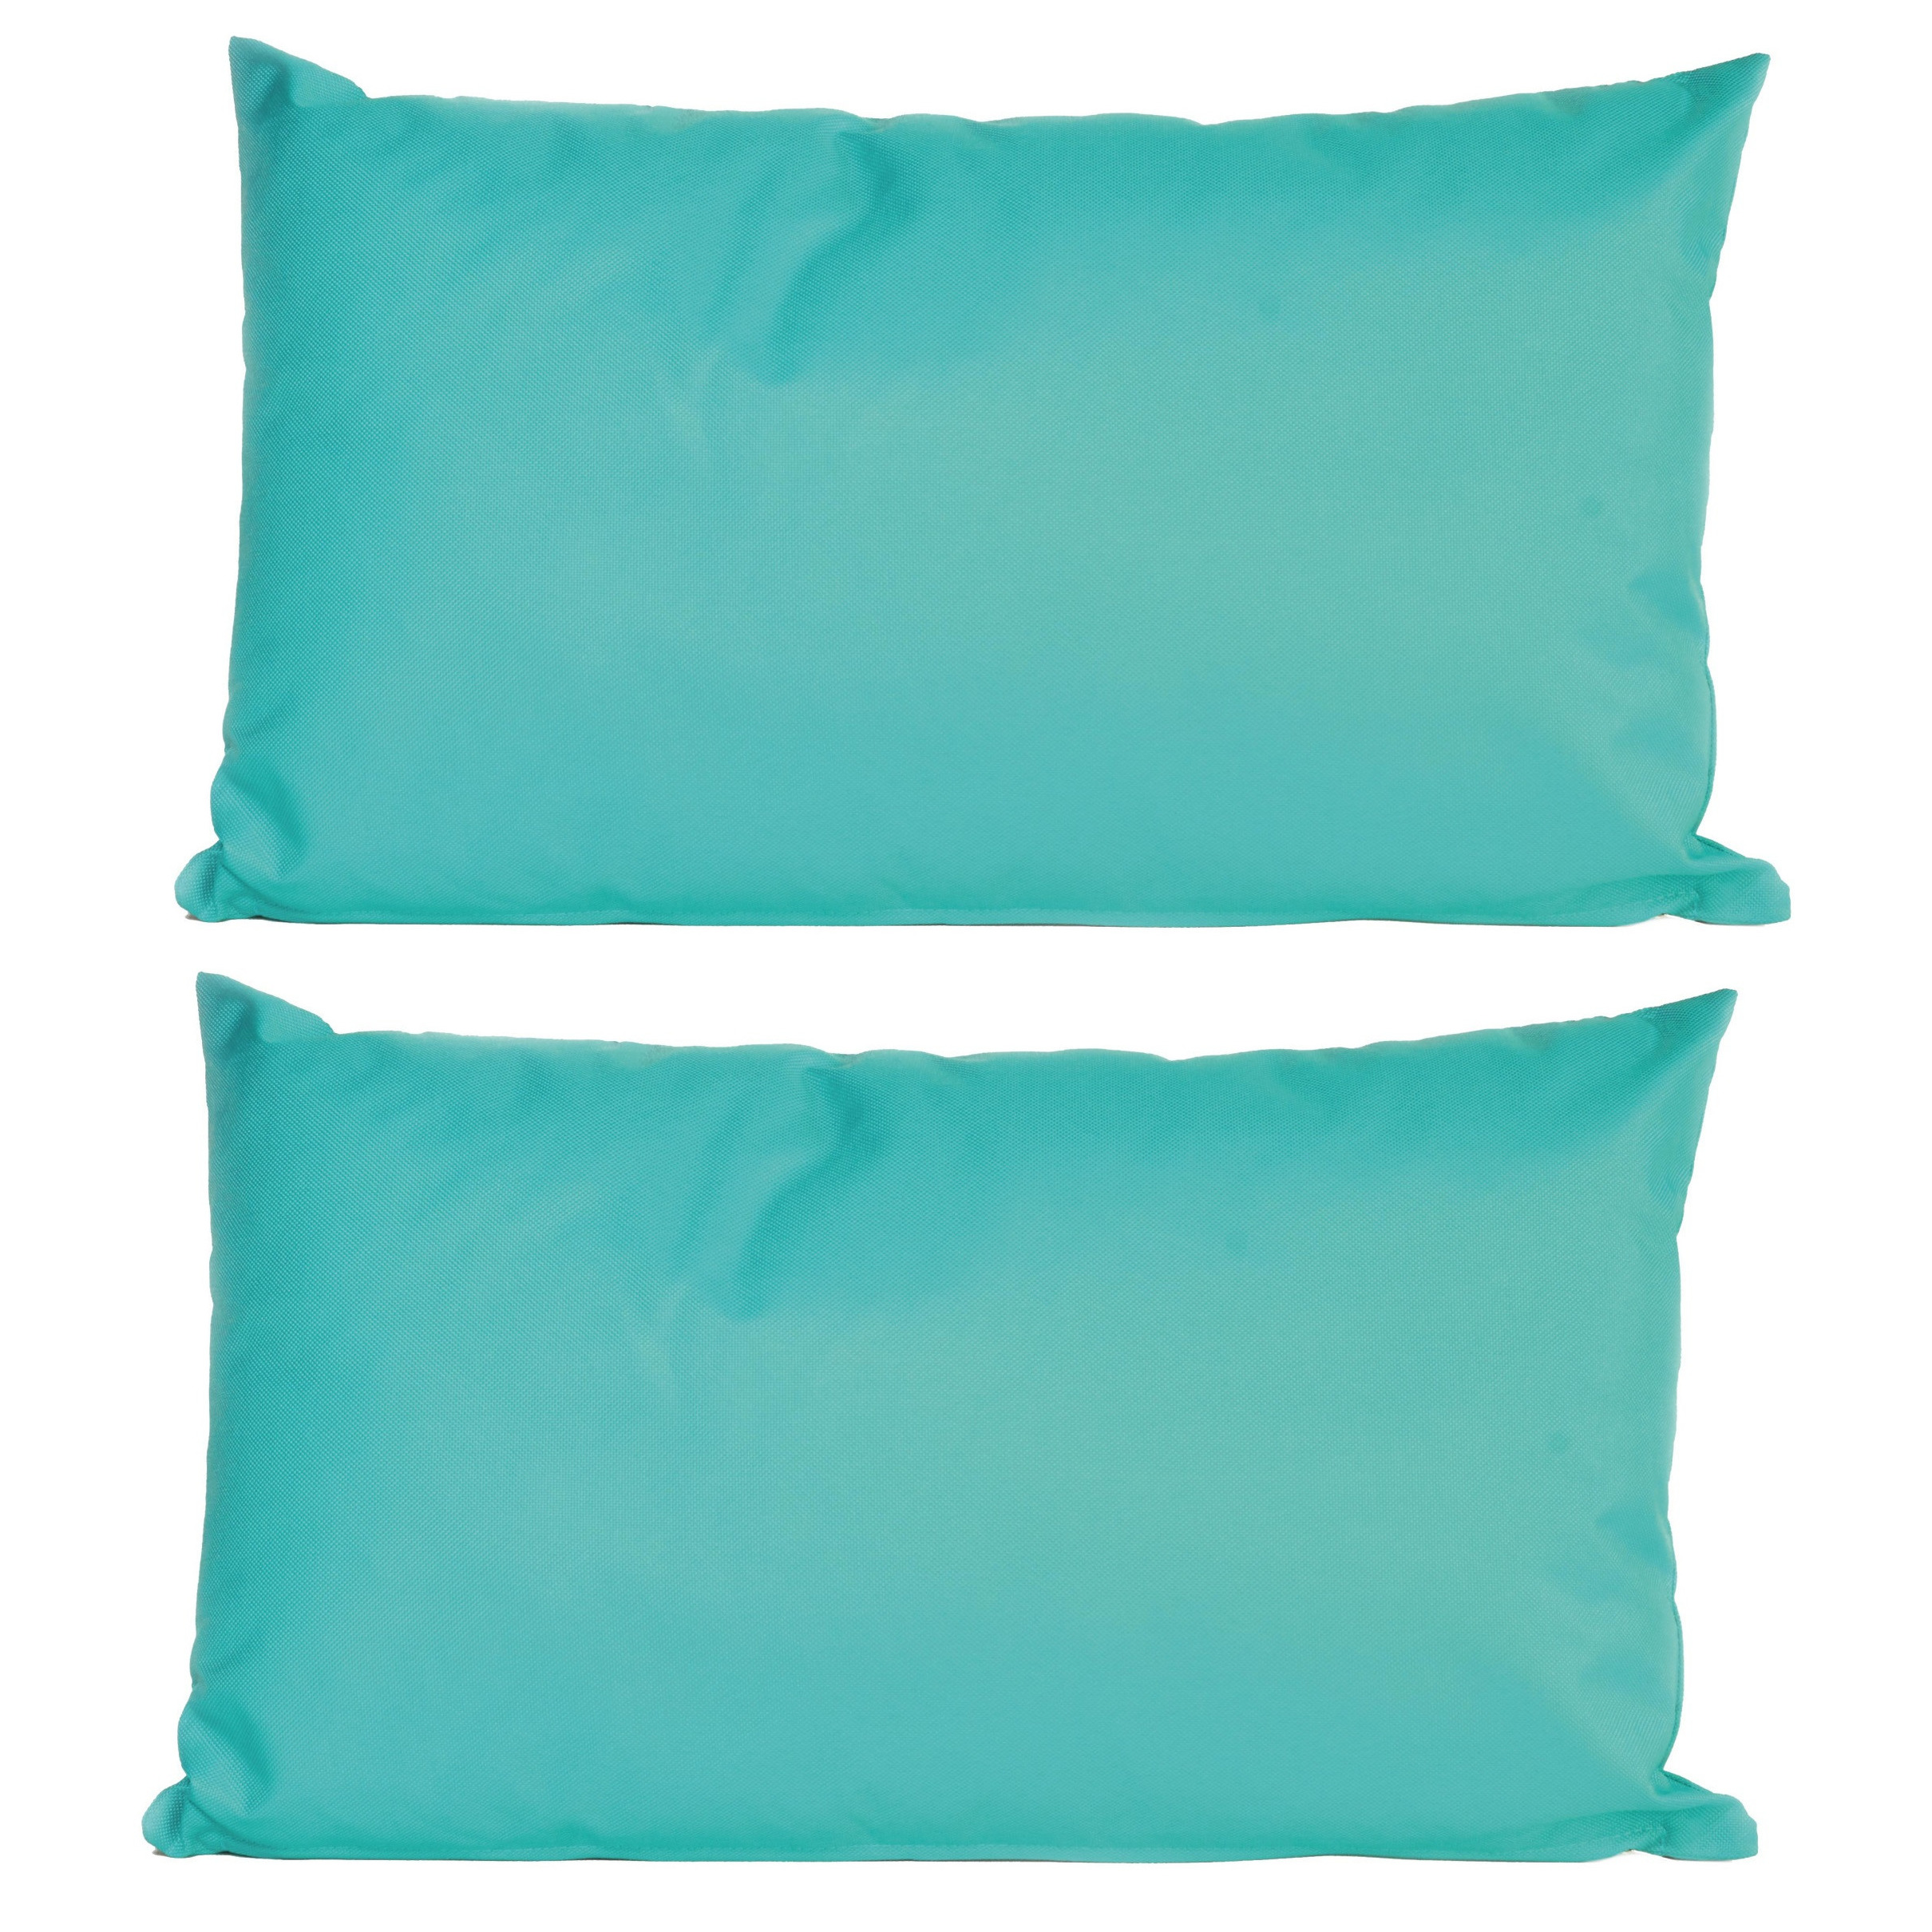 4x Bank-sier kussens voor binnen en buiten in de kleur aqua blauw 30 x 50 cm